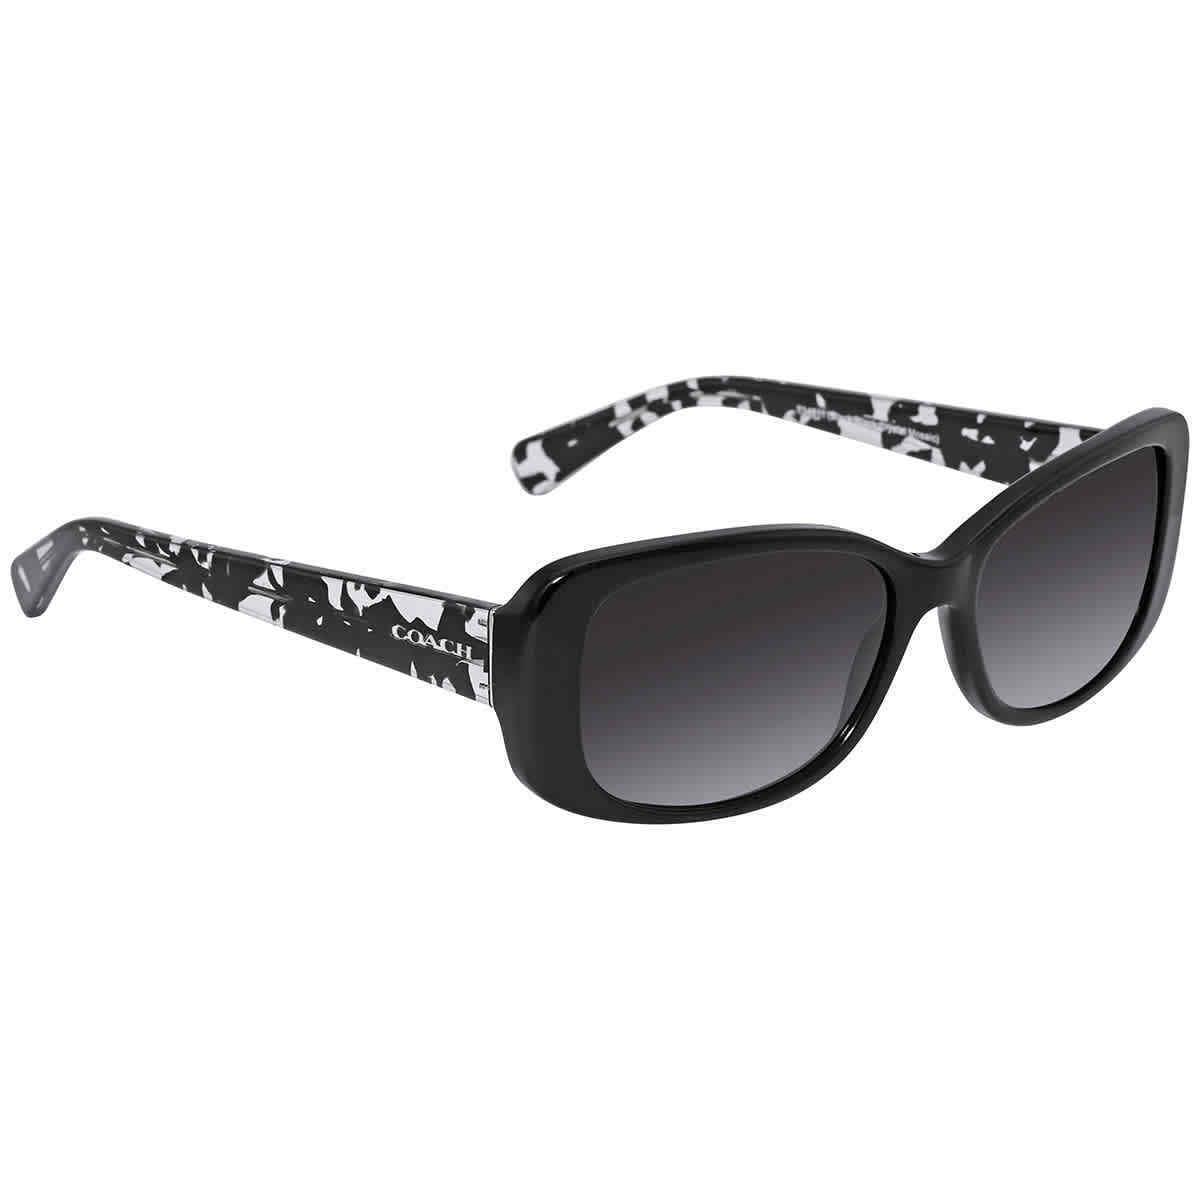 Coach Women`s Black Rectangle Sunglasses w/ Gradient Lens - HC8168-534811-56